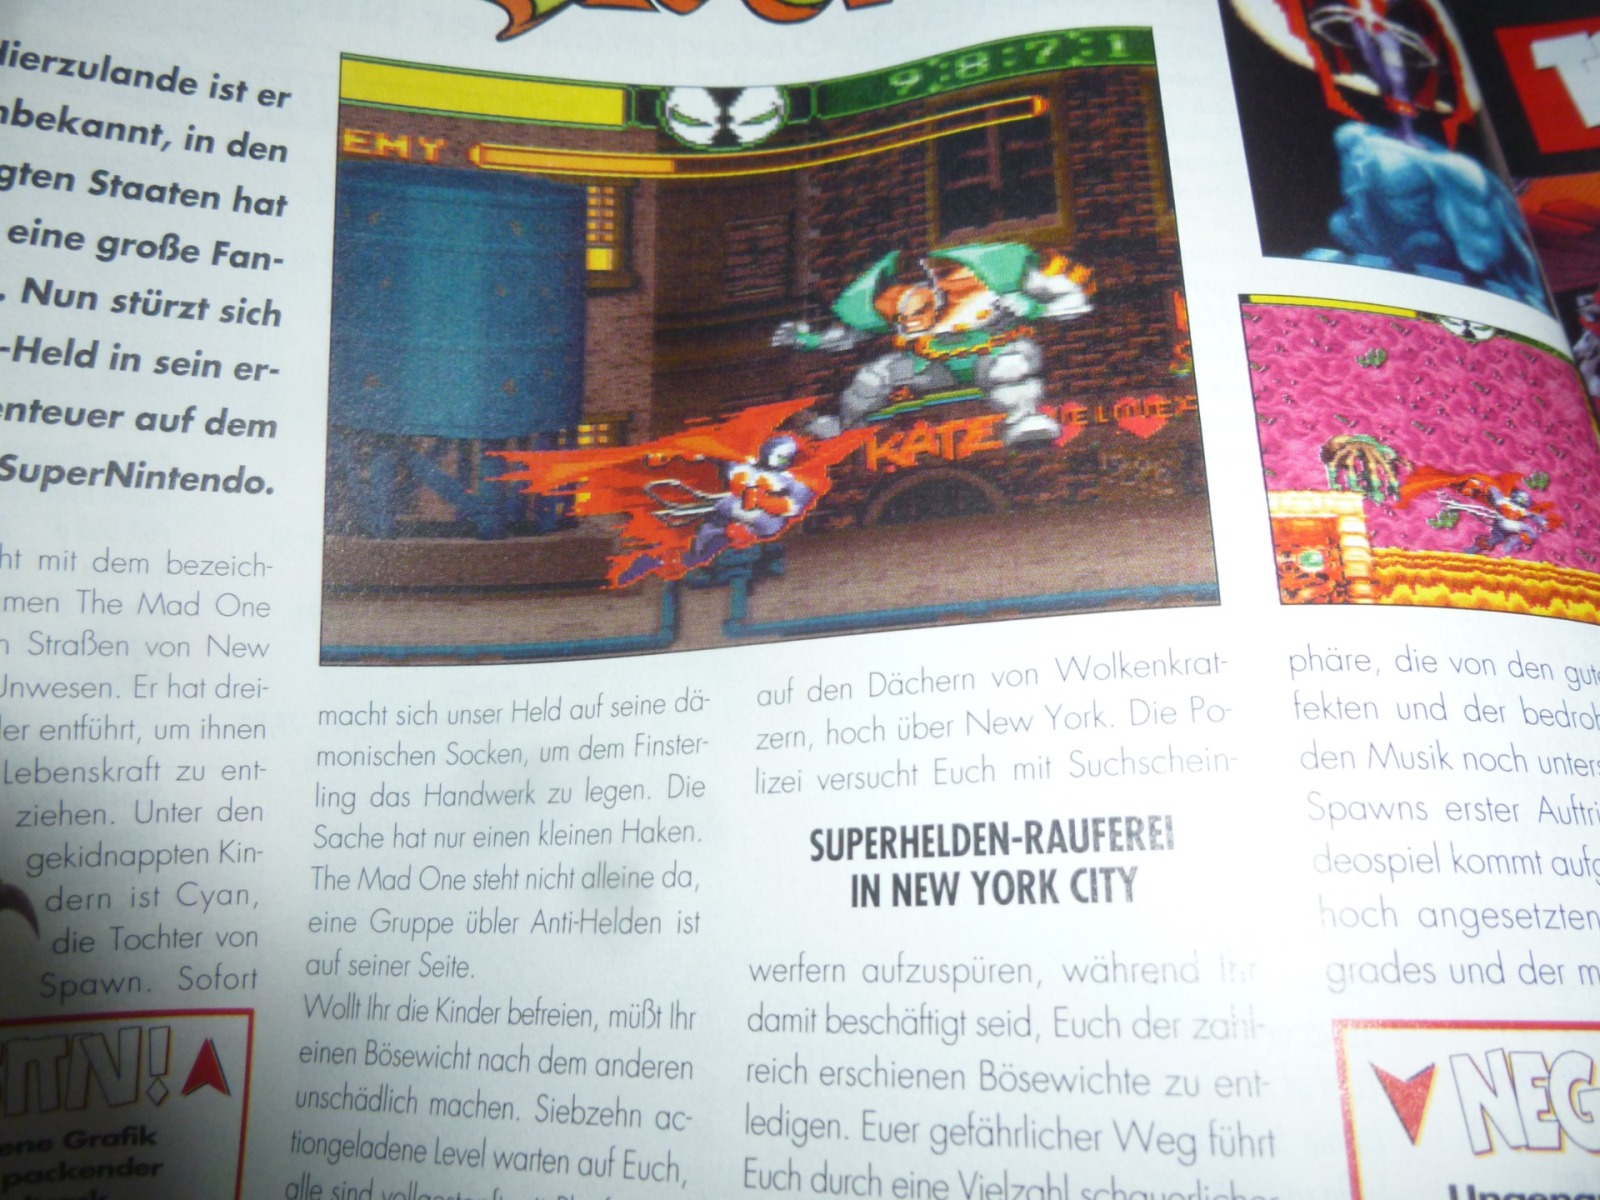 TOTAL Das unabhängige Magazin - 100 Nintendo - Ausgabe 4/96 1996 9